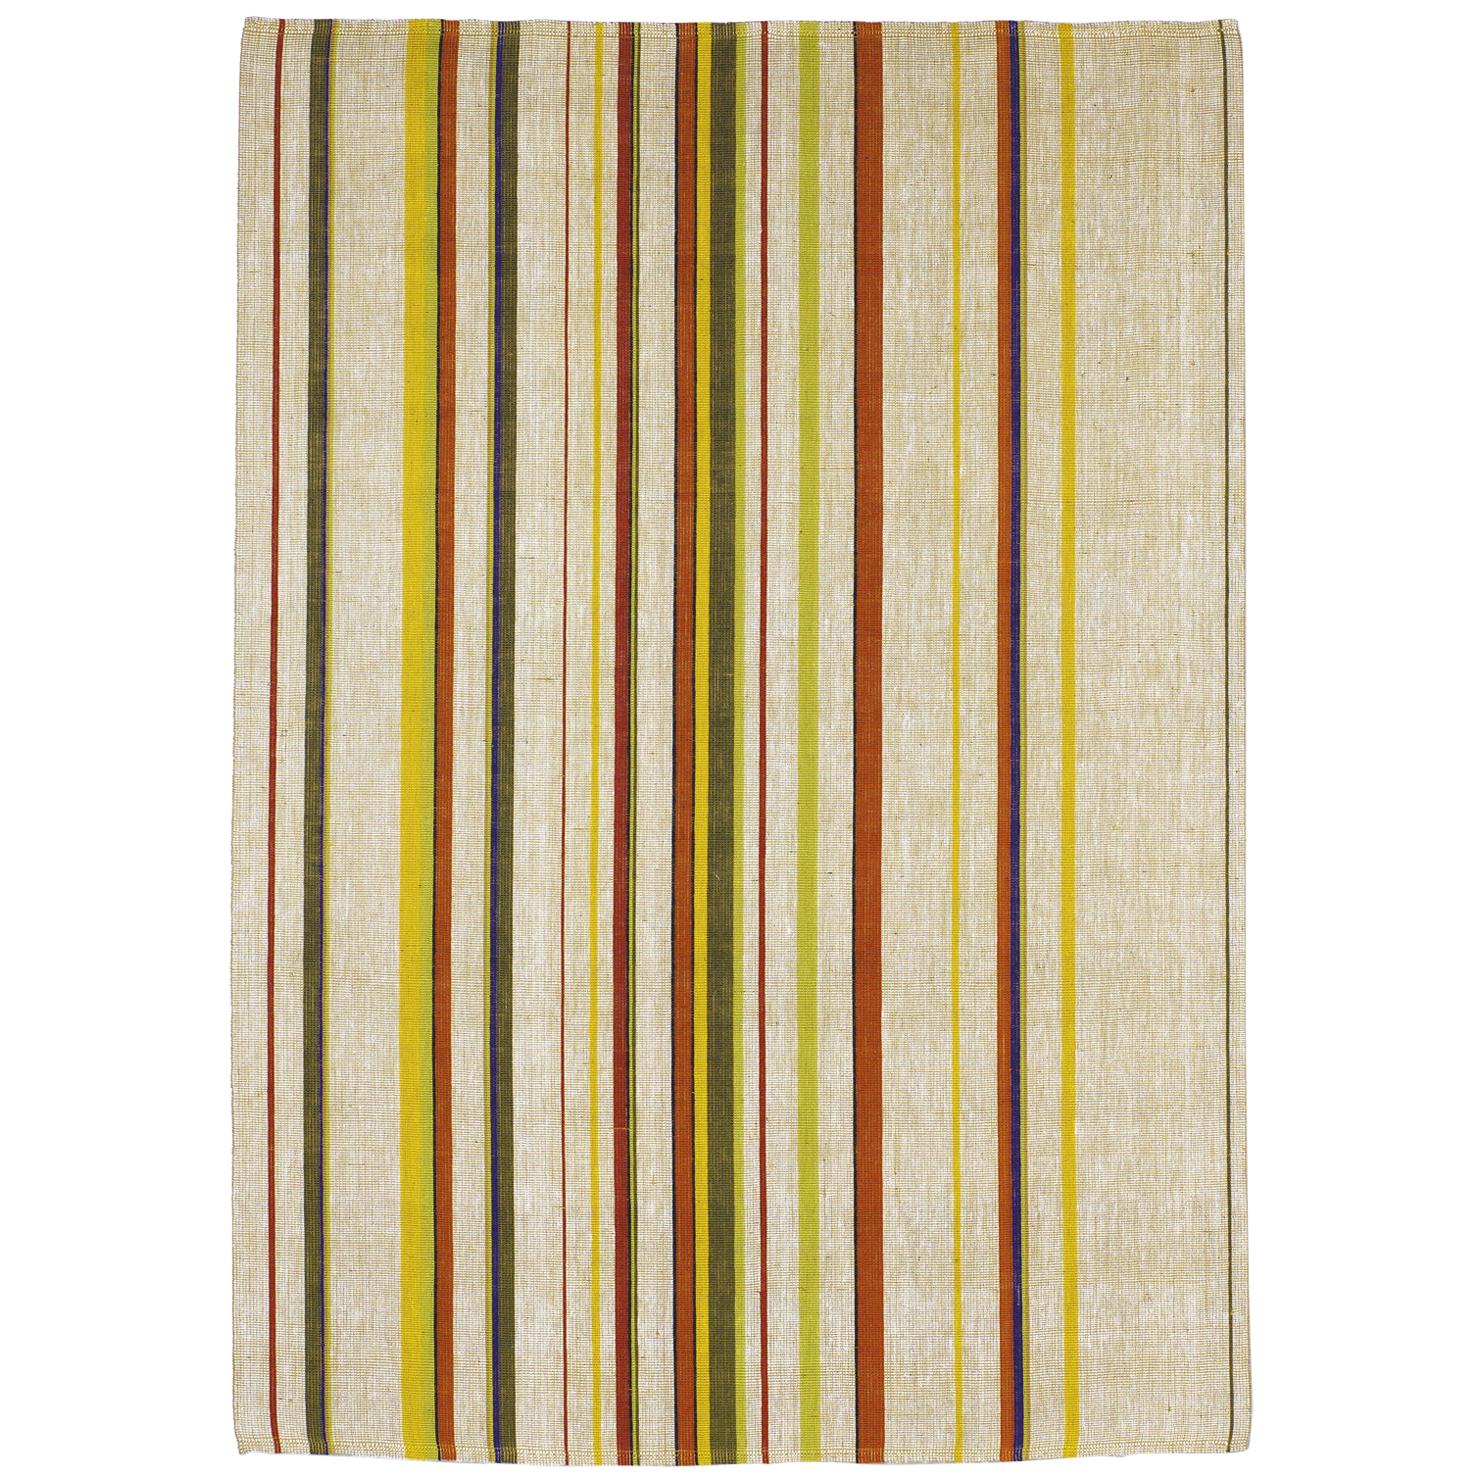 Contemporary Thin Striped Multi-Color Jute Rug by Deanna Comellini 170x240cm 